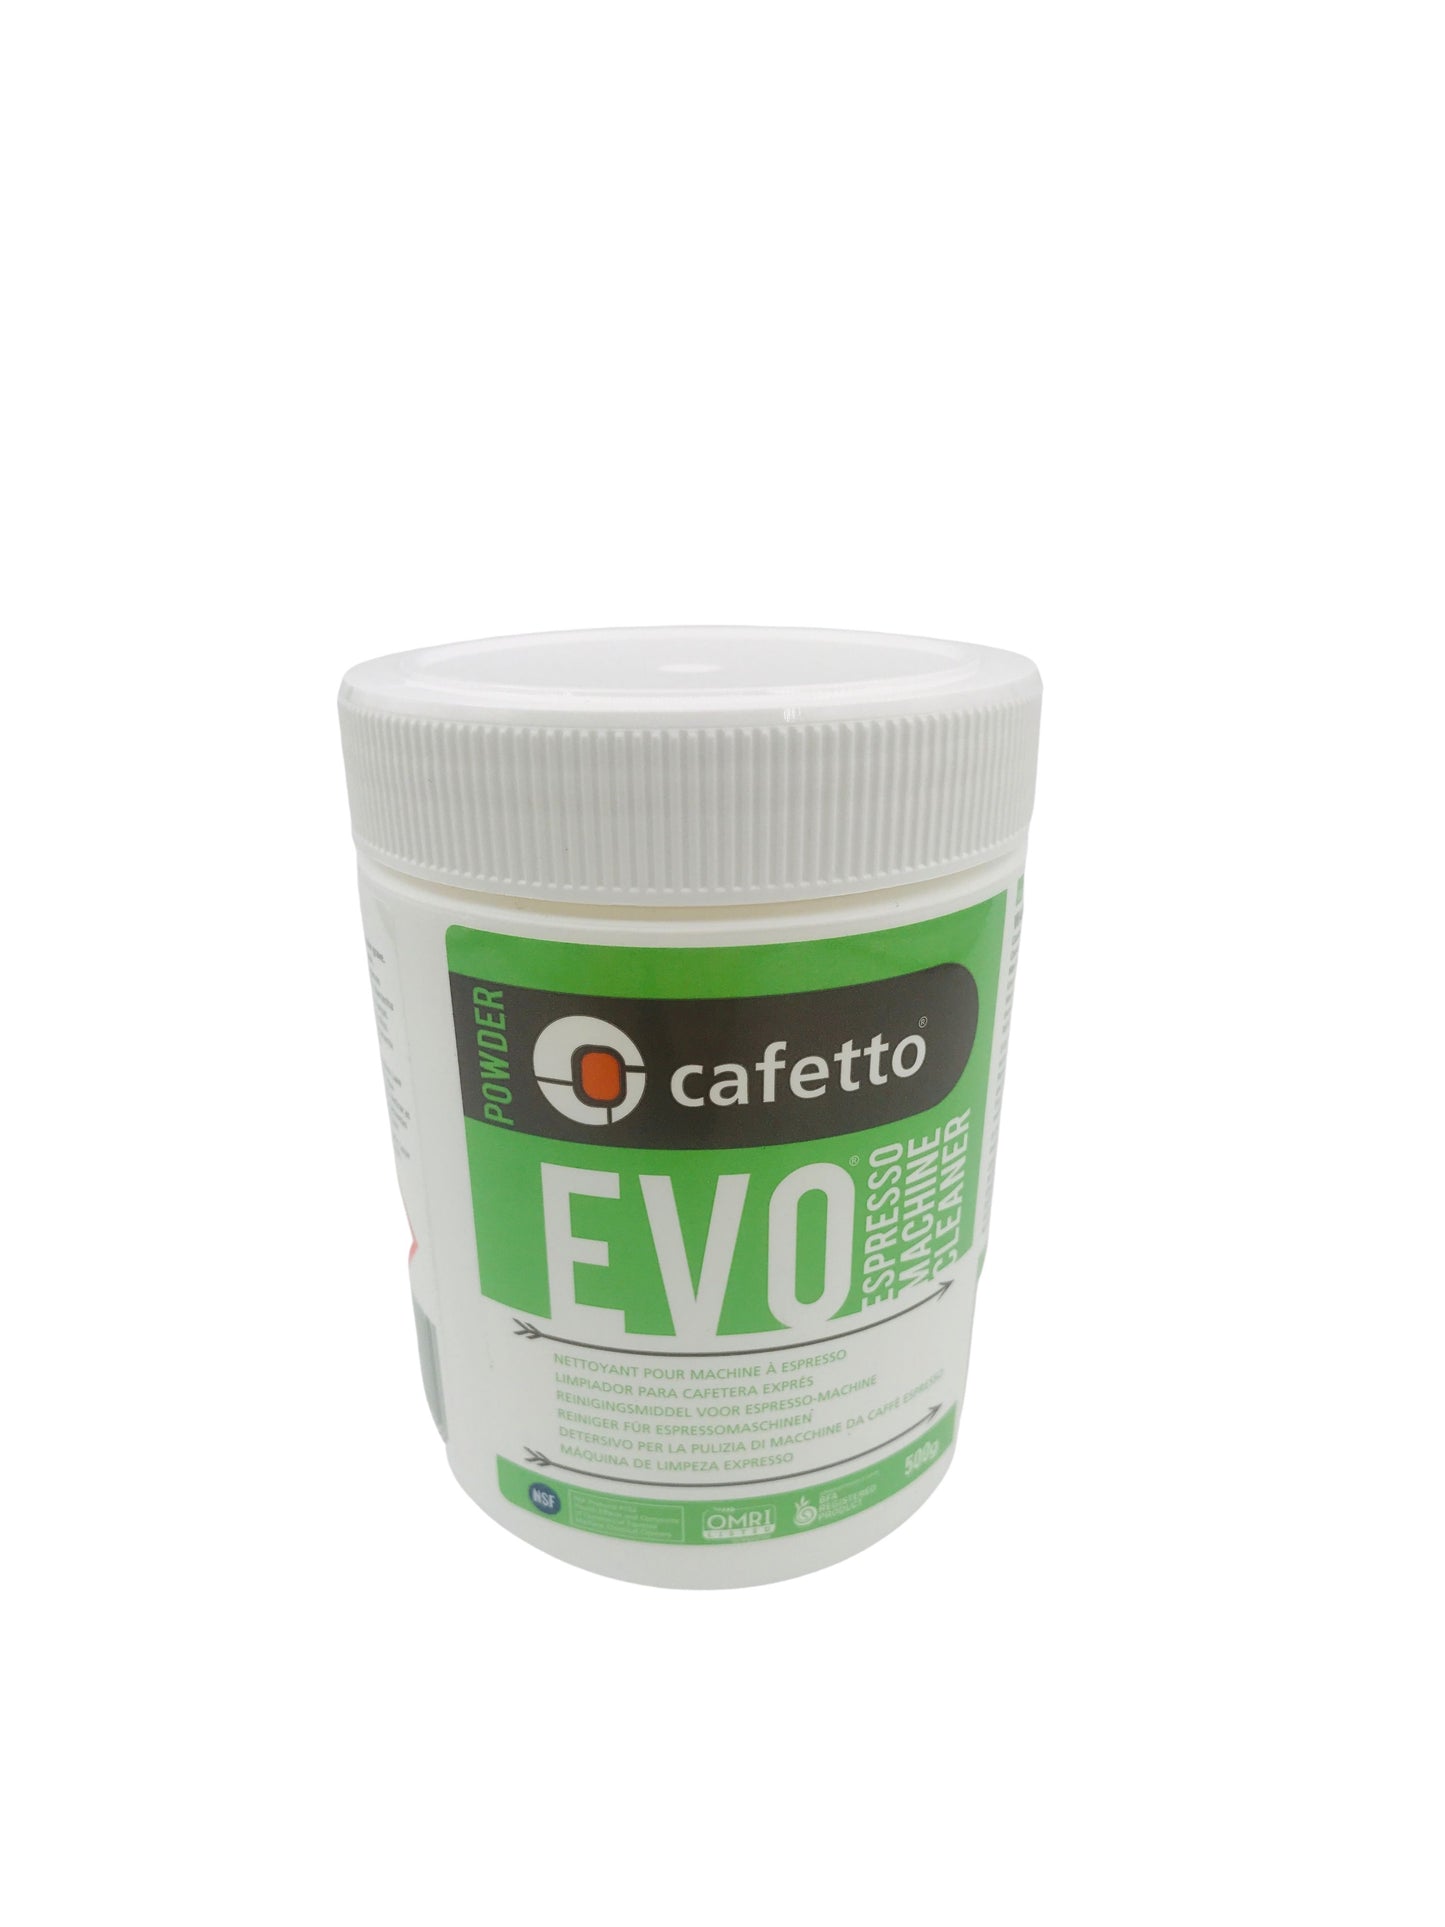 Cafetto - EVO 500g